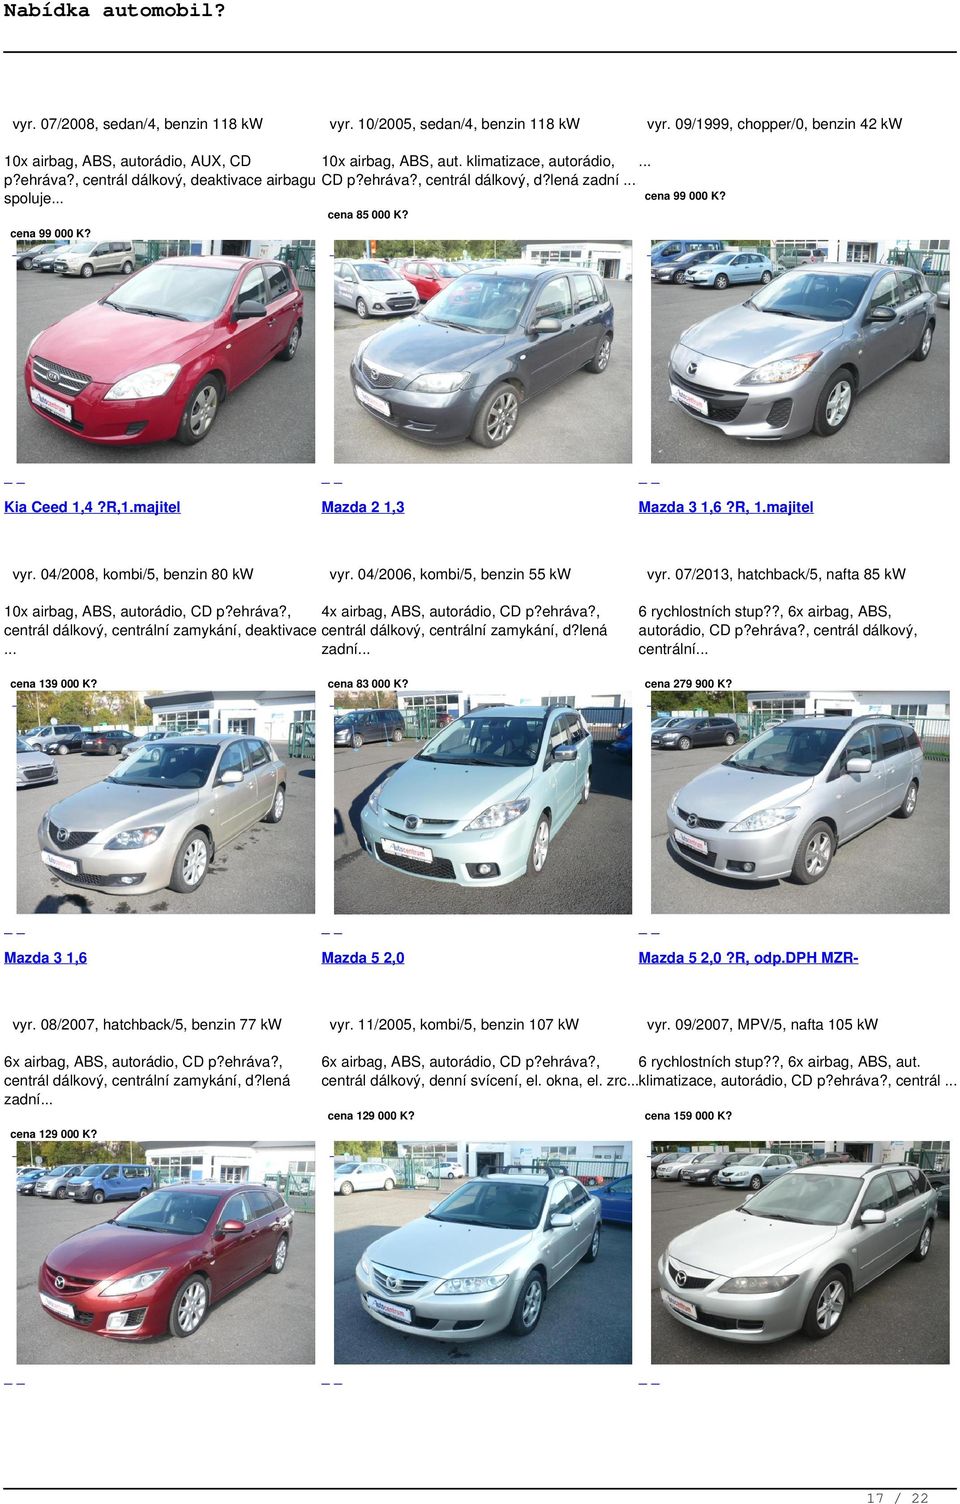 04/2008, kombi/5, benzin 80 kw Mazda 2 1,3 vyr. 04/2006, kombi/5, benzin 55 kw 10x airbag, ABS, autorádio, CD p?ehráva?